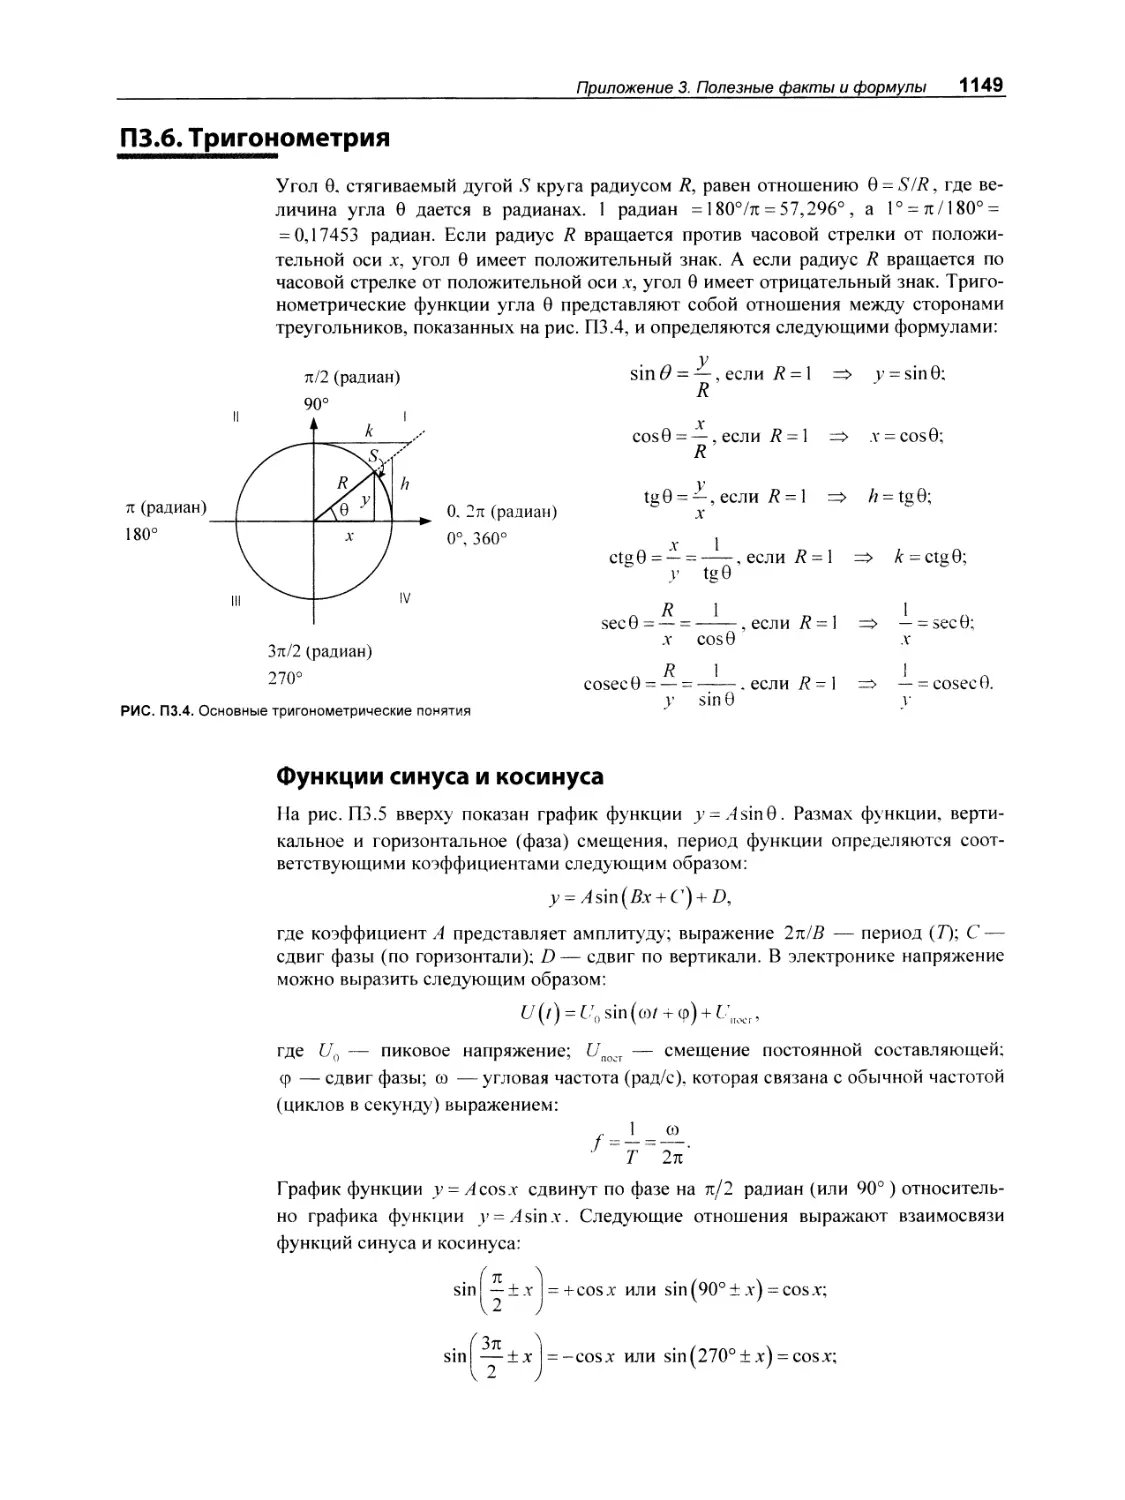 П3.6. Тригонометрия
Функции синуса и косинуса